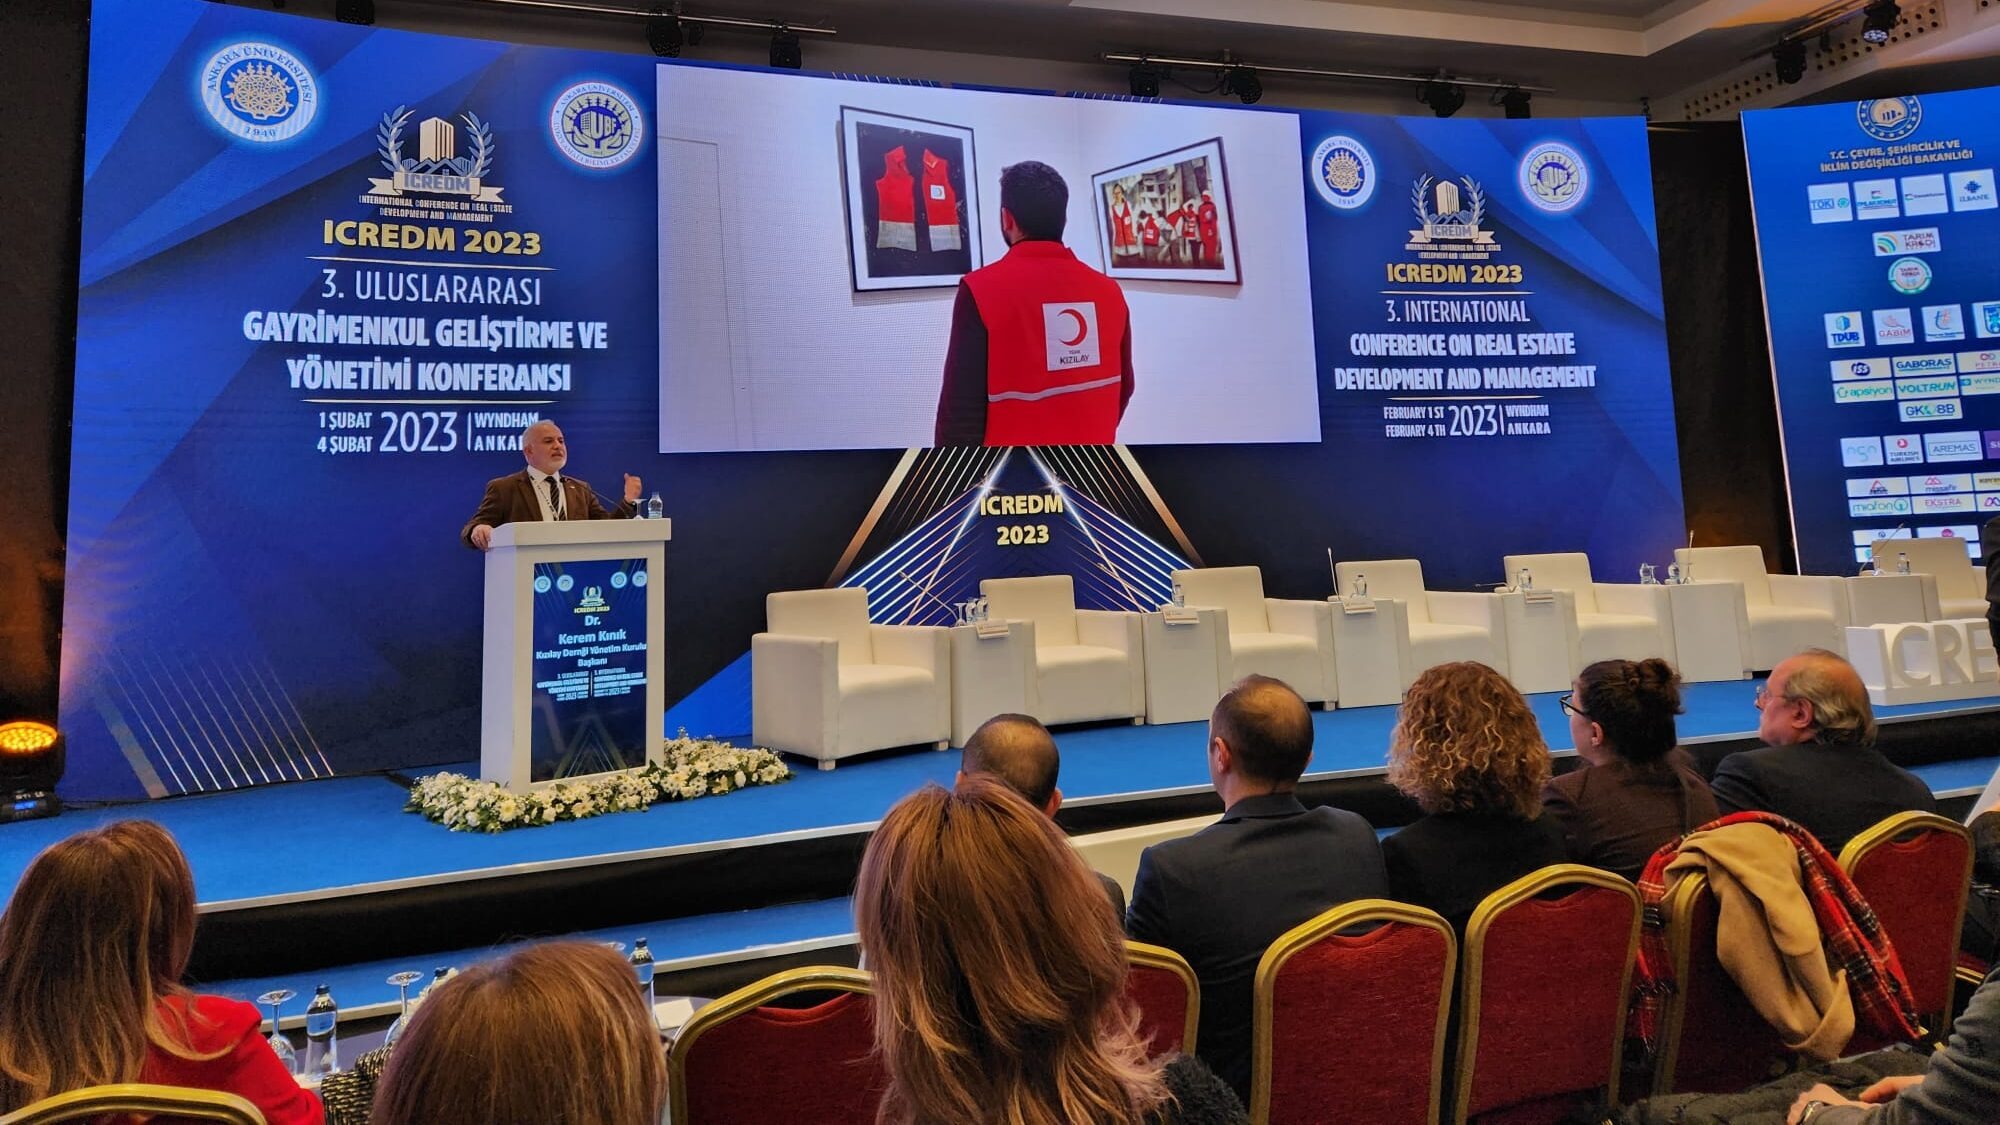 Türk Kızılay Genel Başkanı Kerem Kınık | 3. Uluslararası Gayrimenkul Geliştirme ve Yönetimi Konferansı